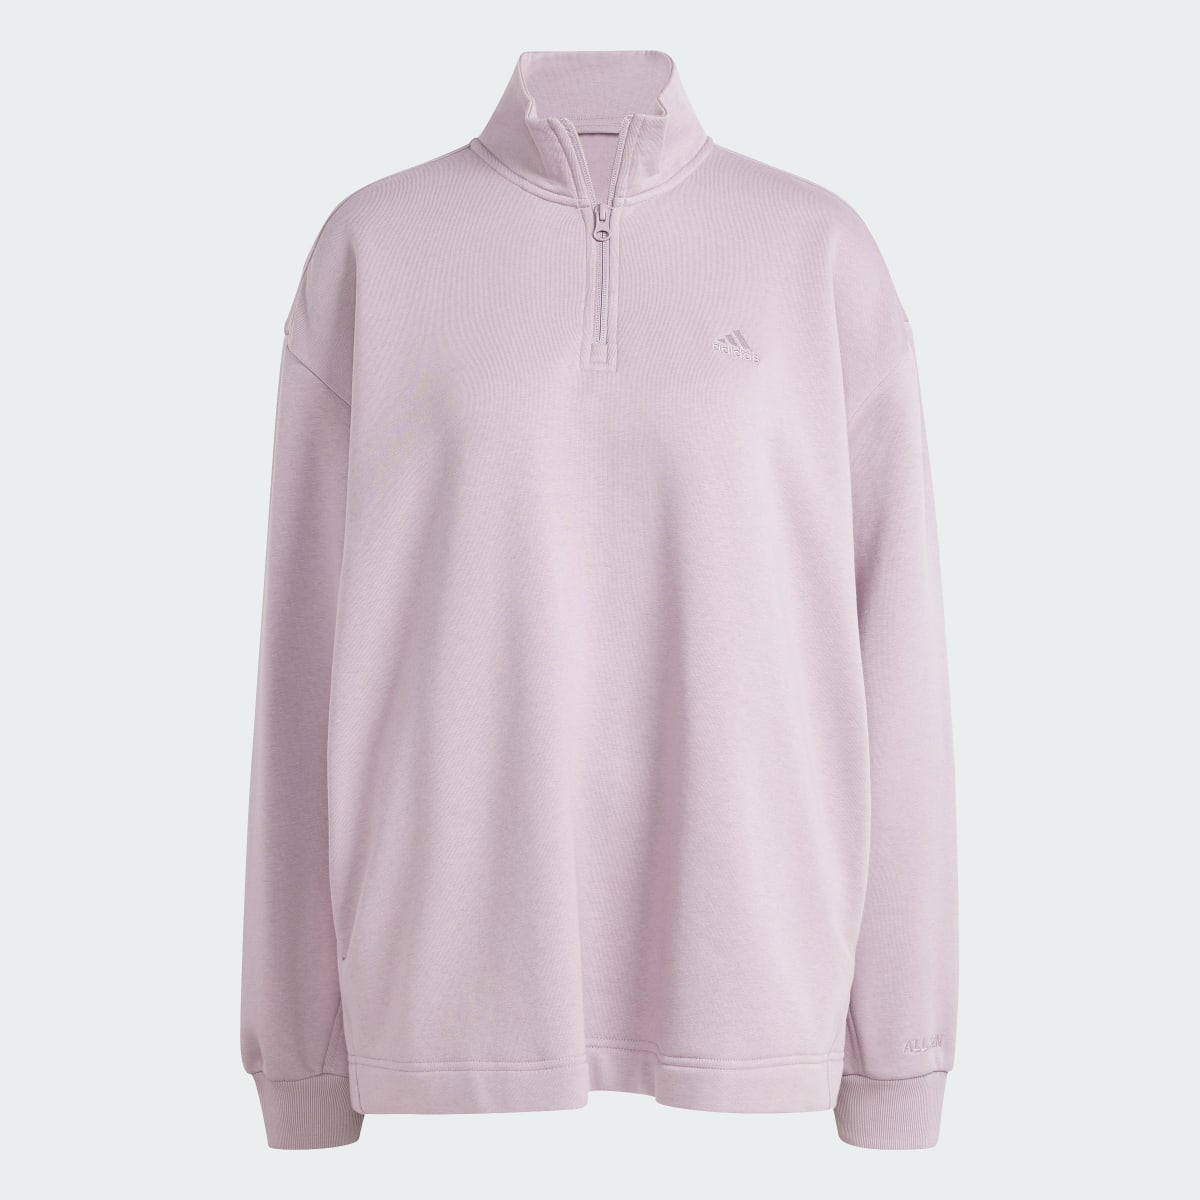 Adidas ALL SZN Fleece Quarter-Zip Sweatshirt. 5